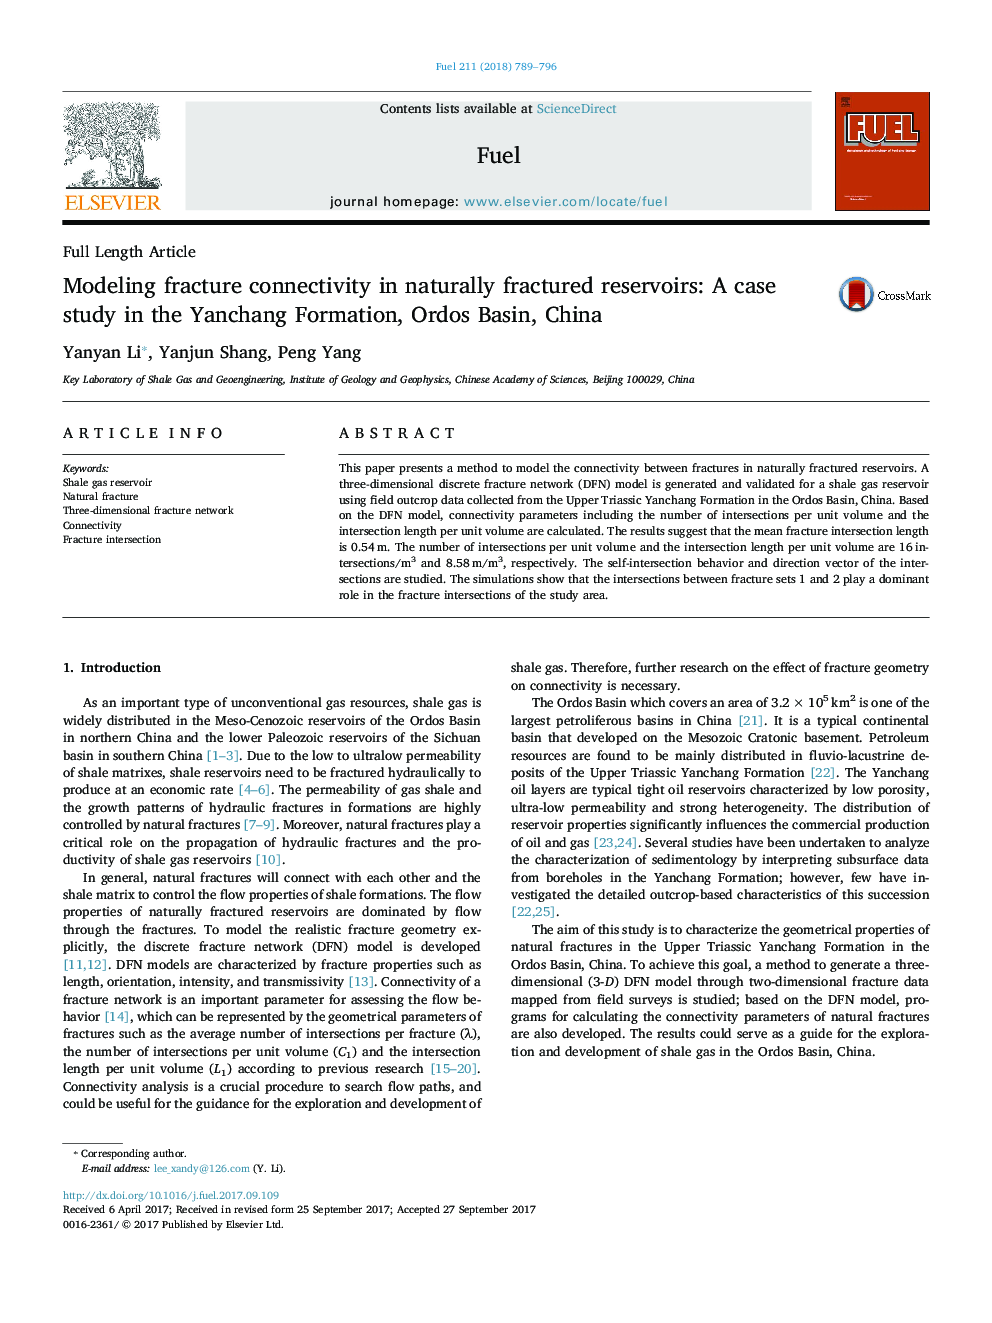 مدل سازی اتصالات شکستگی در مخازن طبیعی شکسته: مطالعه موردی در سازند یانچانگ، حوضه رود اردو، چین